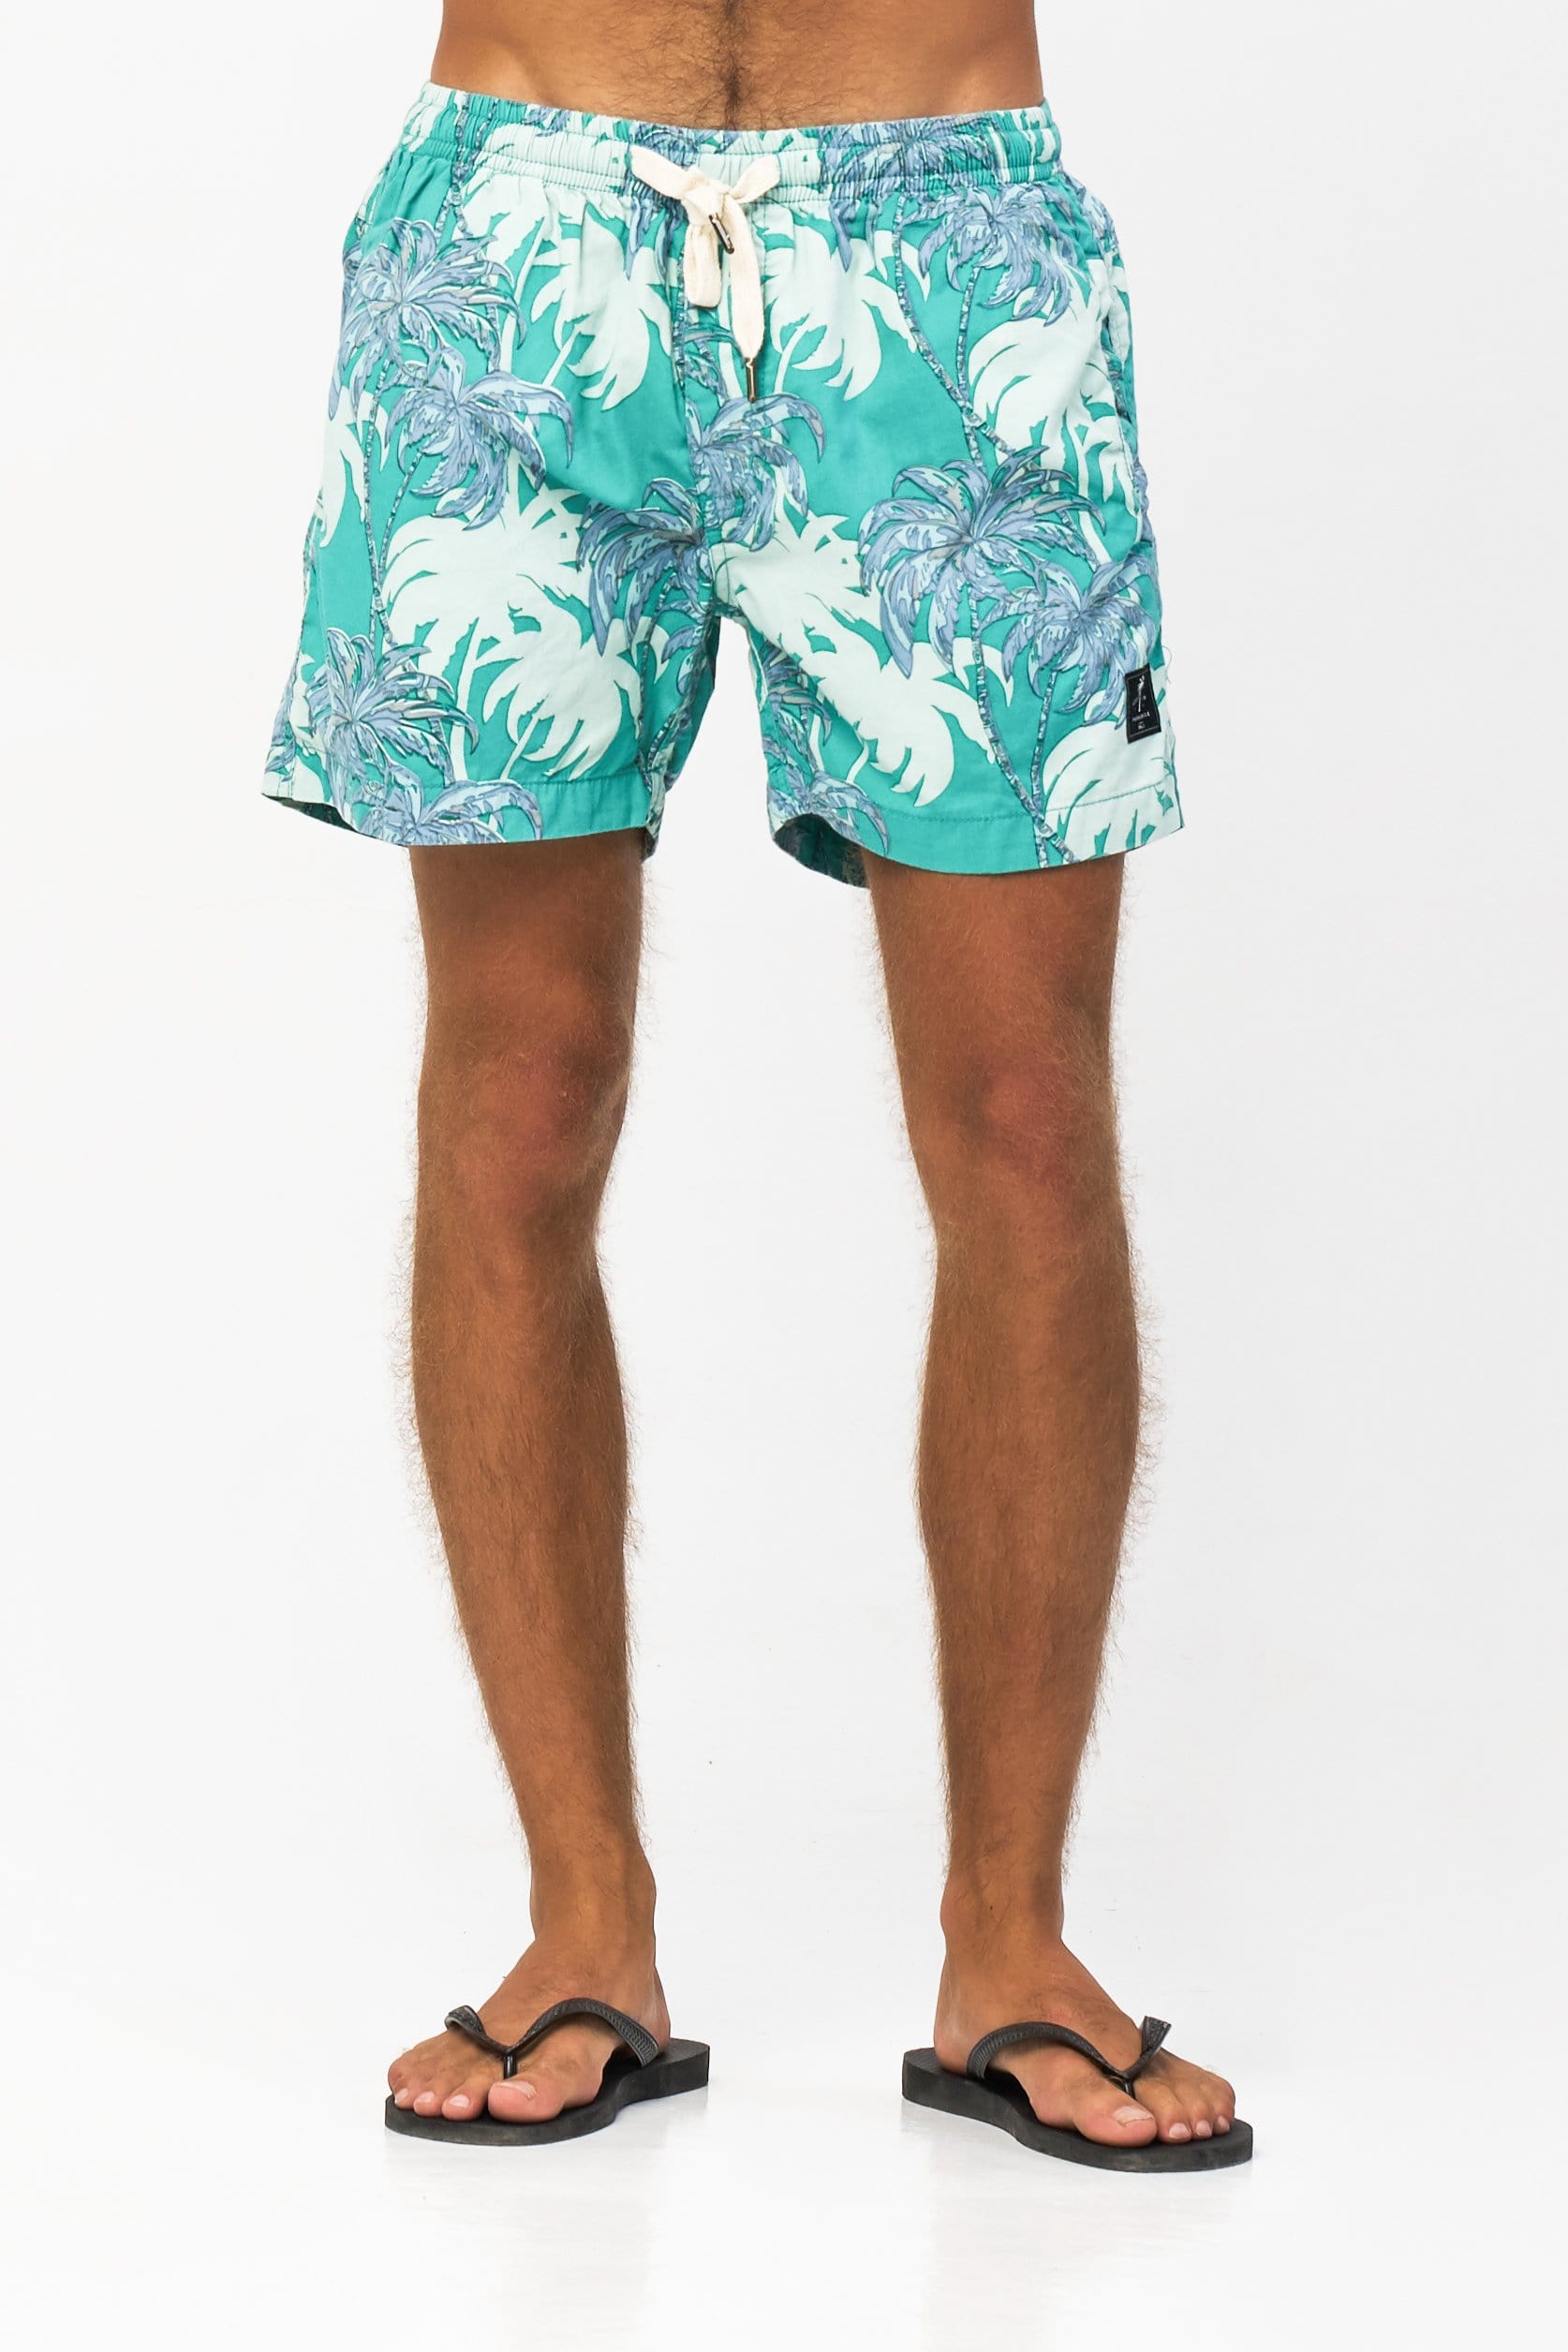 Ocean Palm Short - Man Short - LOST IN PARADISE